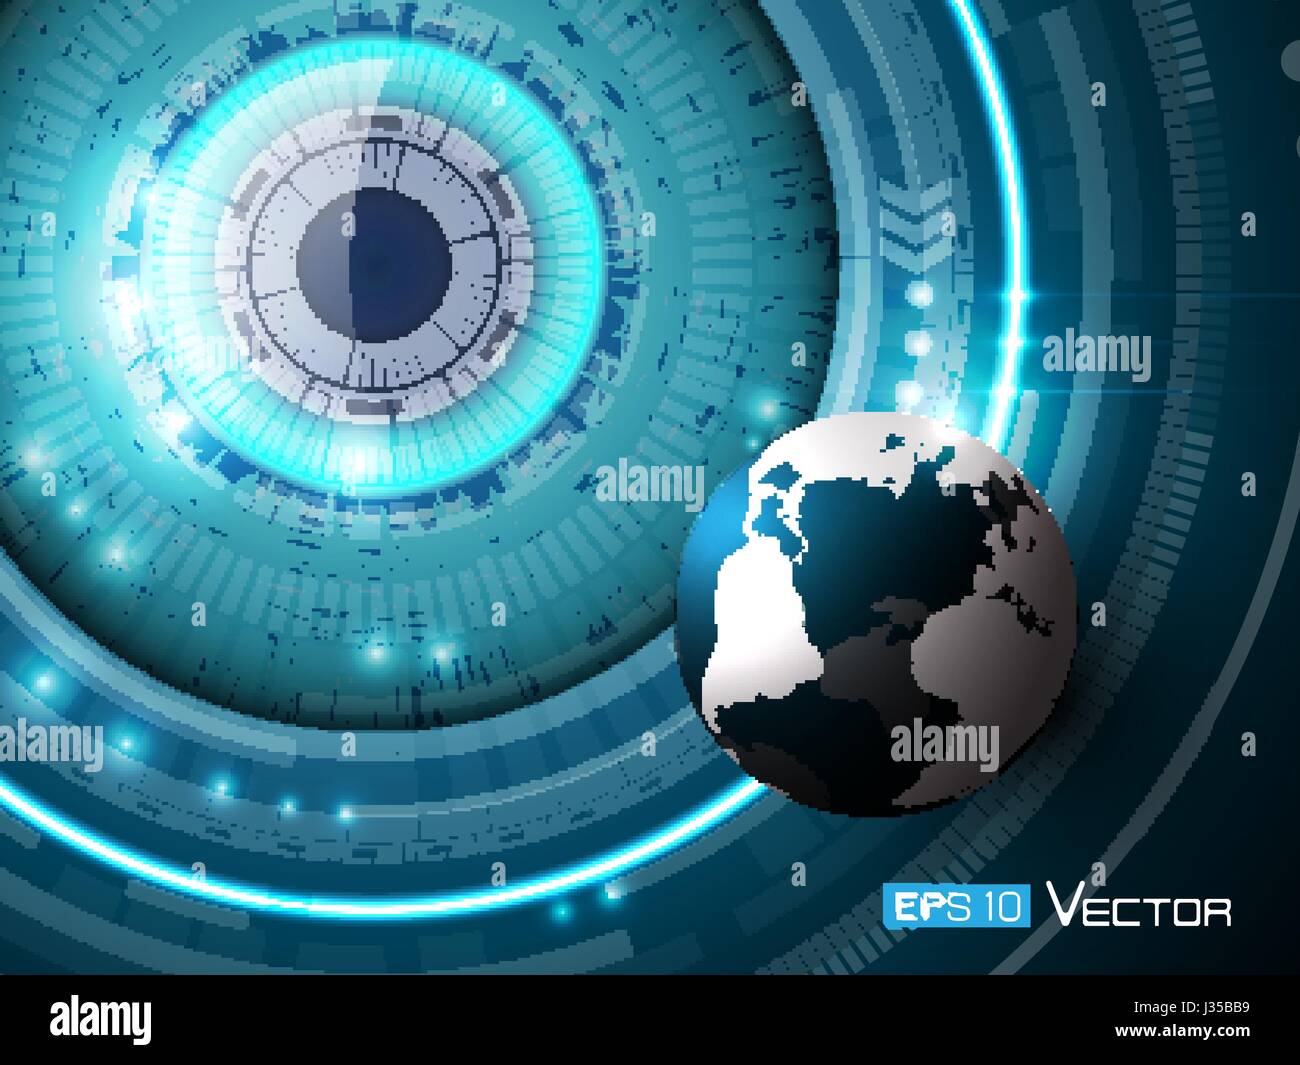 Vektor abstrakte Technik Hintergrund mit futuristischen Auge, eps10 Datei, Farbverlauf und Transparenz verwendet, Raster-Version verfügbar. Bild einschließlich Kugel. Stock Vektor